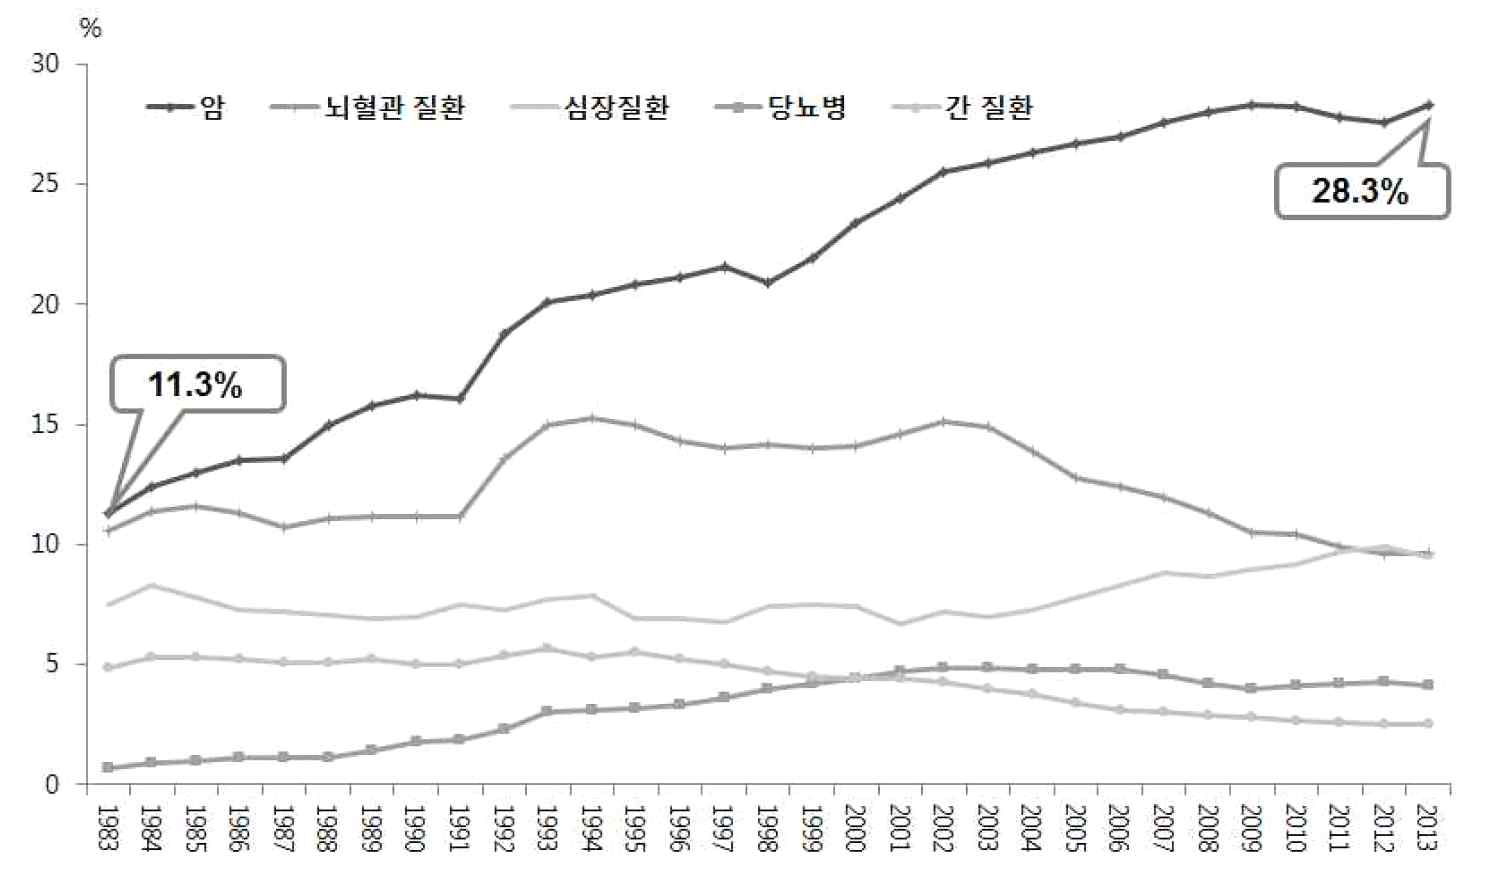 암 환자 증가 추이 출처: 통계청 국가통계포털 사망원인통계 2014, 국립암센터 2013